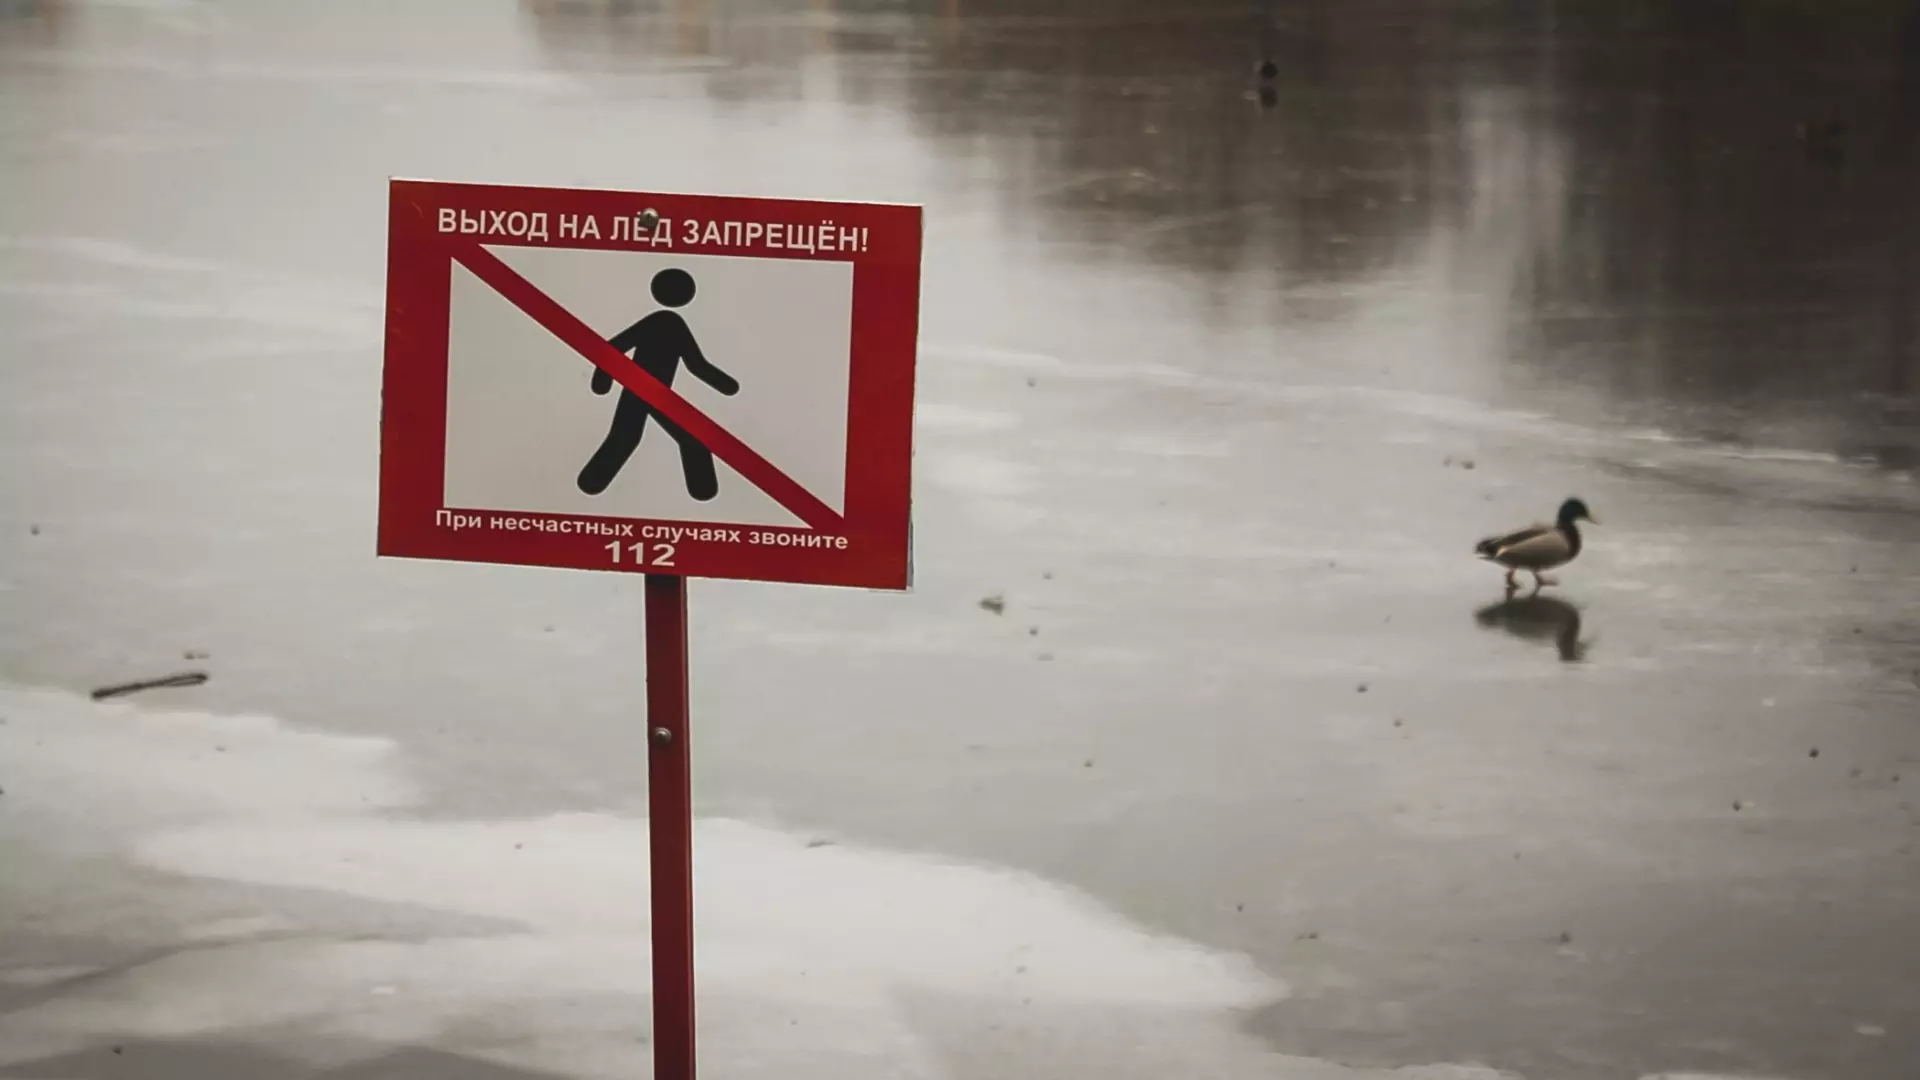 В Лахденпохском районе начнет действовать запрет выхода на лед